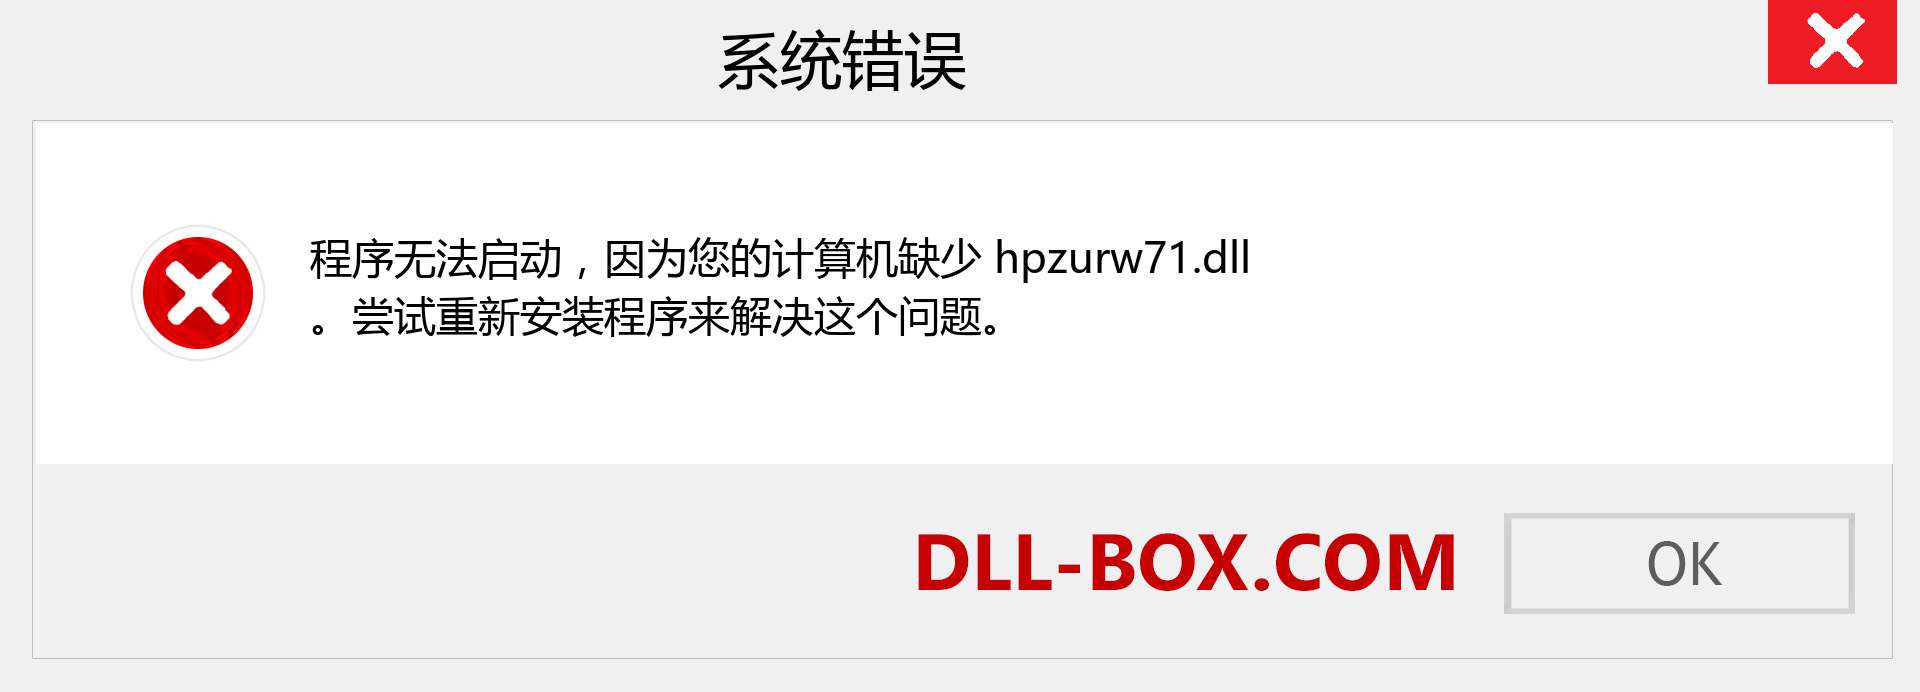 hpzurw71.dll 文件丢失？。 适用于 Windows 7、8、10 的下载 - 修复 Windows、照片、图像上的 hpzurw71 dll 丢失错误